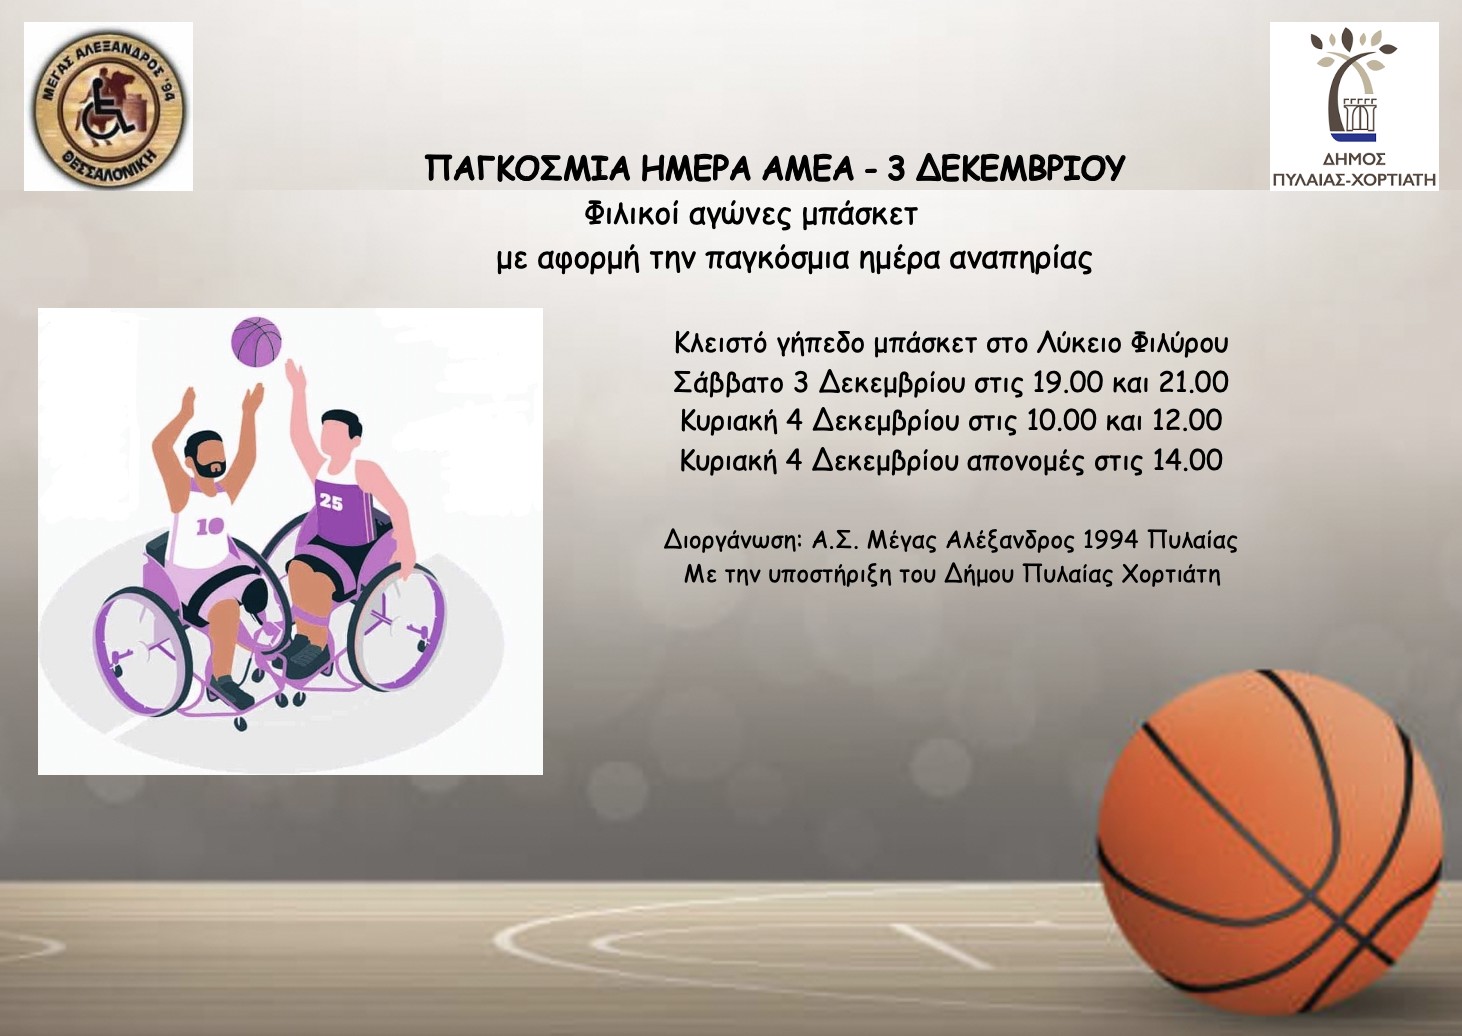 Δήμος Πυλαίας-Χορτιάτη: Φιλικοί αγώνες μπάσκετ με αμαξίδιο στο κλειστό γήπεδο Φιλύρου